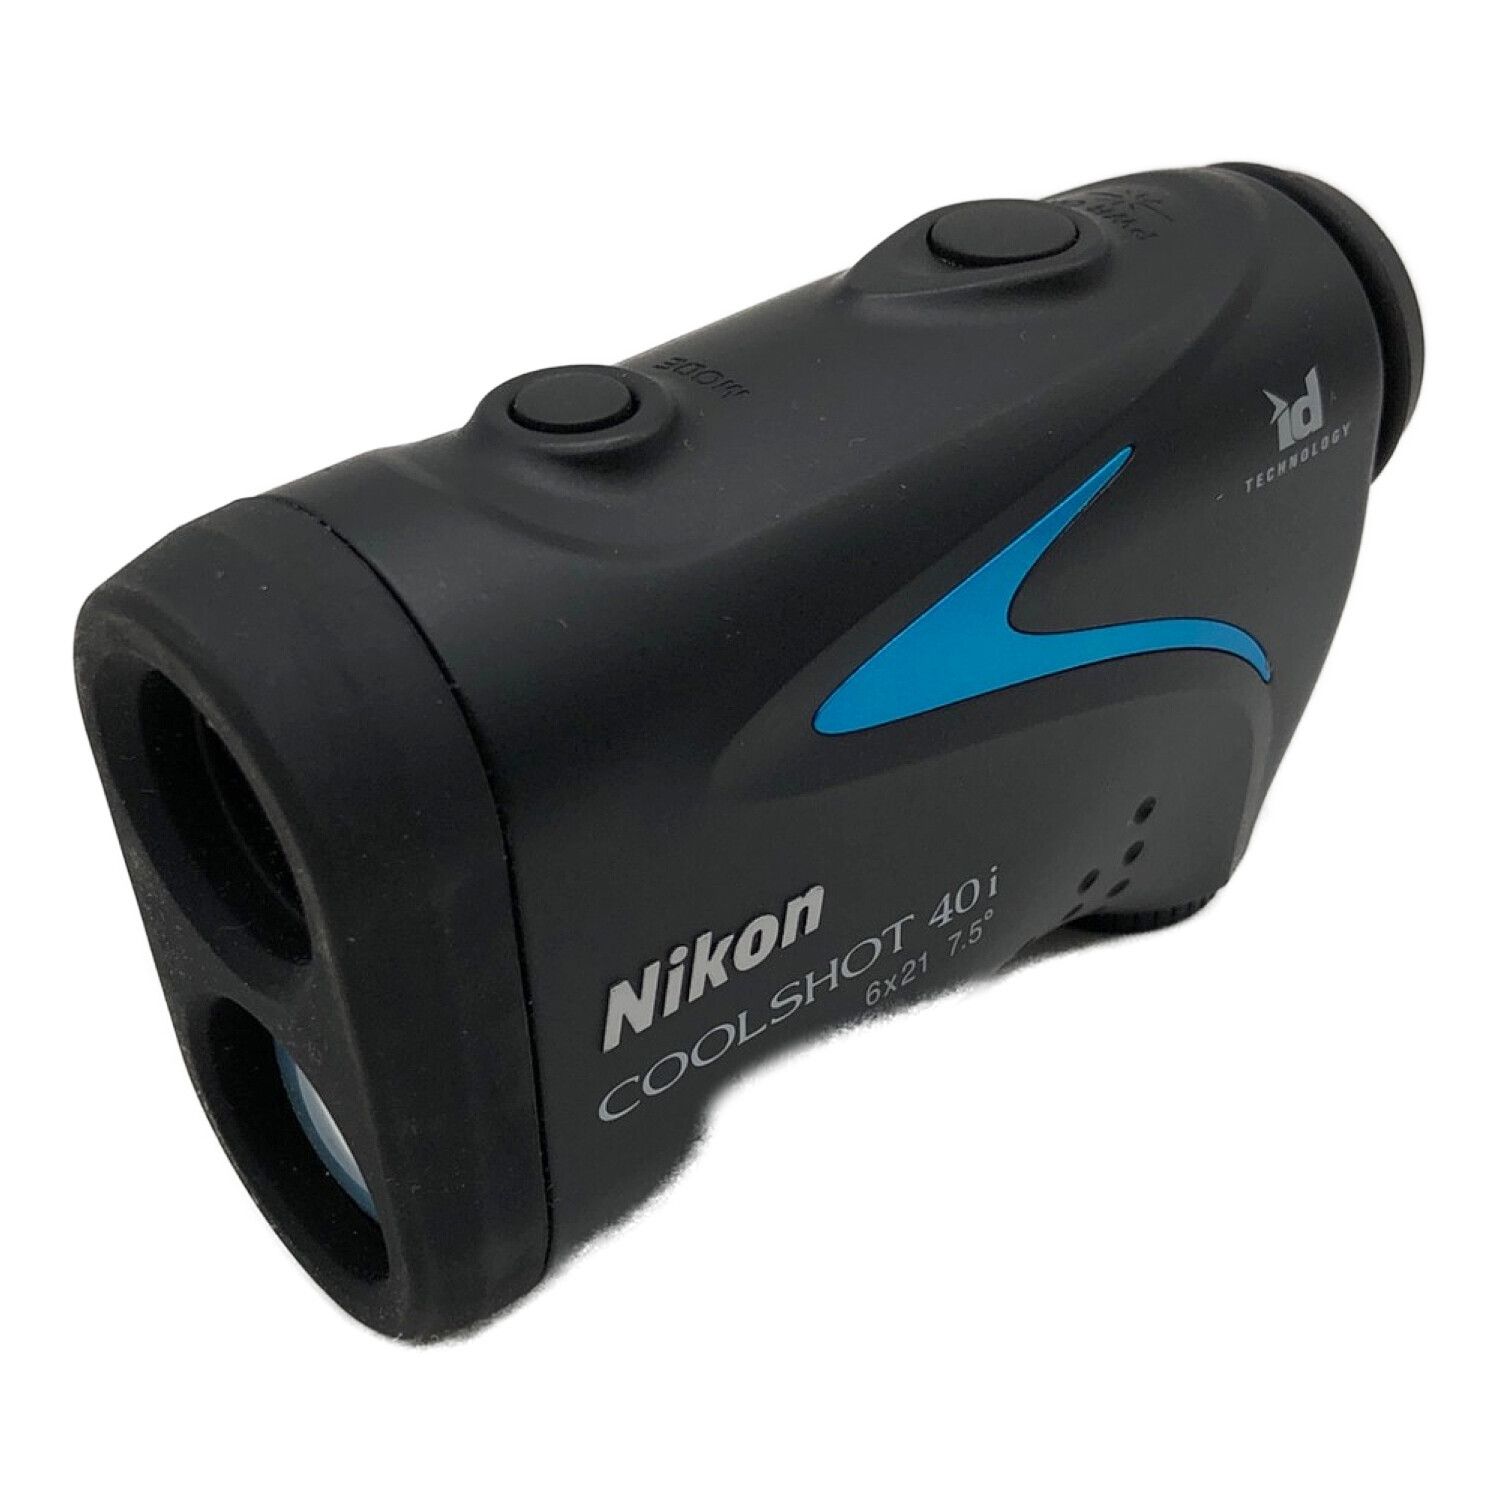 Nikon COOLSHOT 40i ゴルフ用レーザー距離測定器